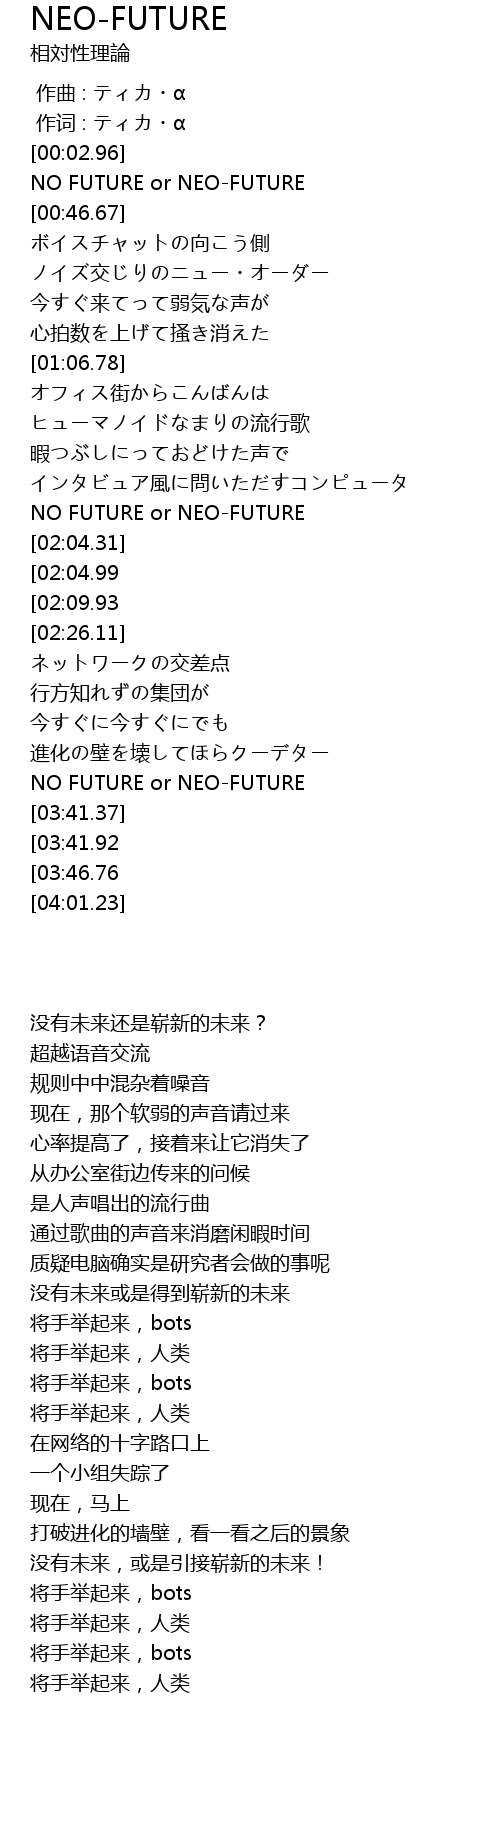 Neo Future Lyrics Follow Lyrics